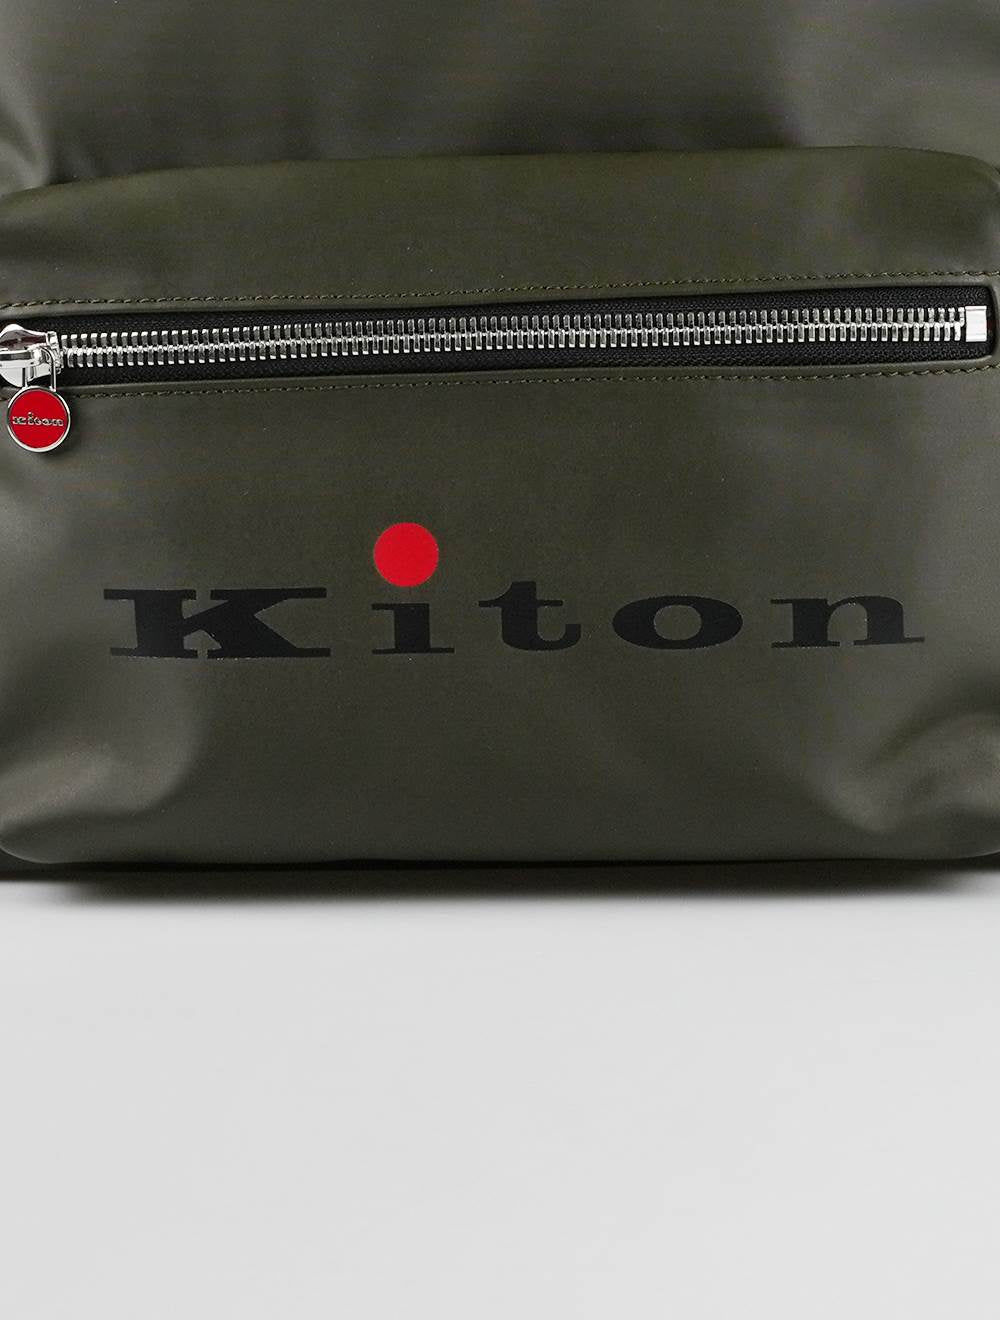 Kiton Green Pa Backpack